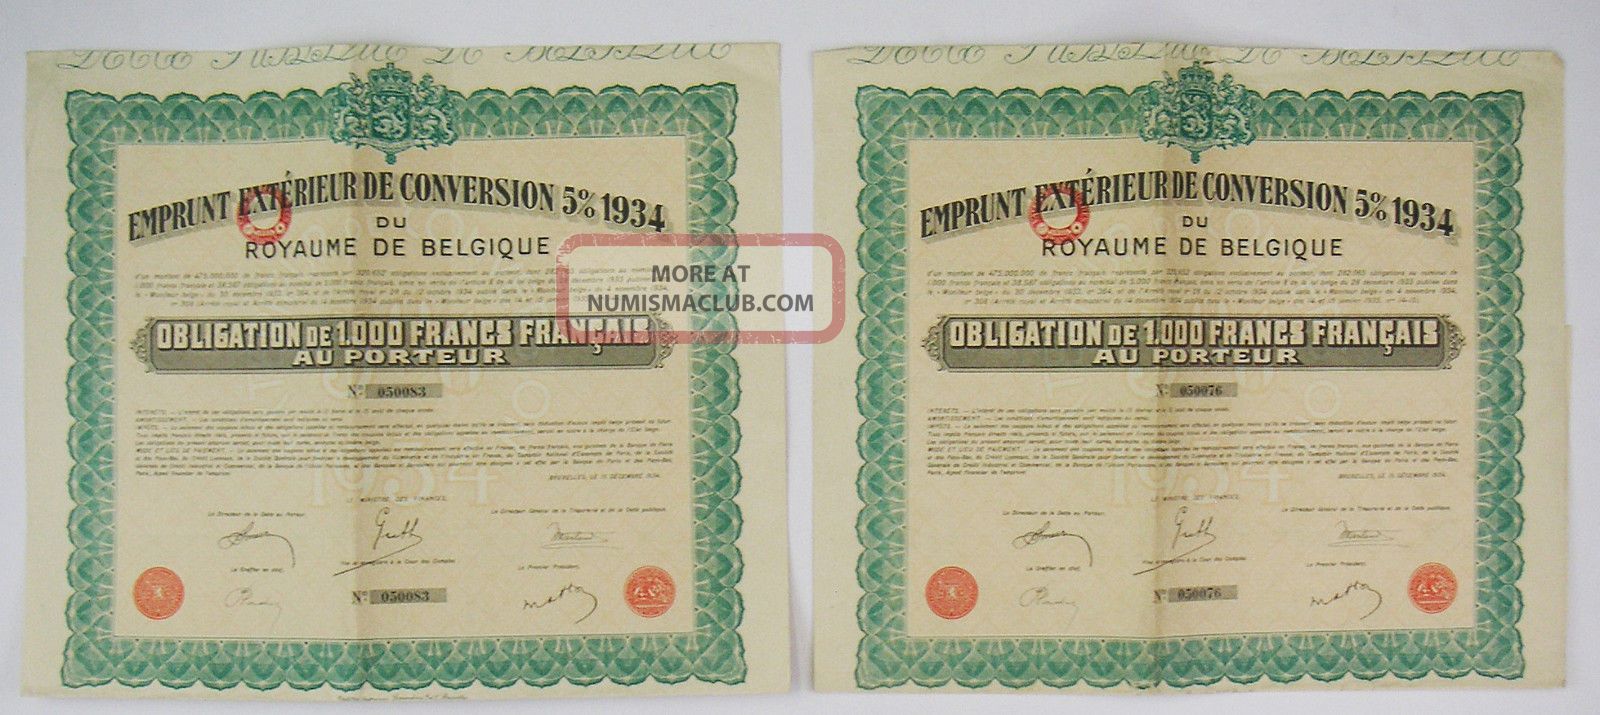 Belgium 1934 - Emprunt 5 Du Royaume De Belgique - Obligation 1000f (x2) Stocks & Bonds, Scripophily photo